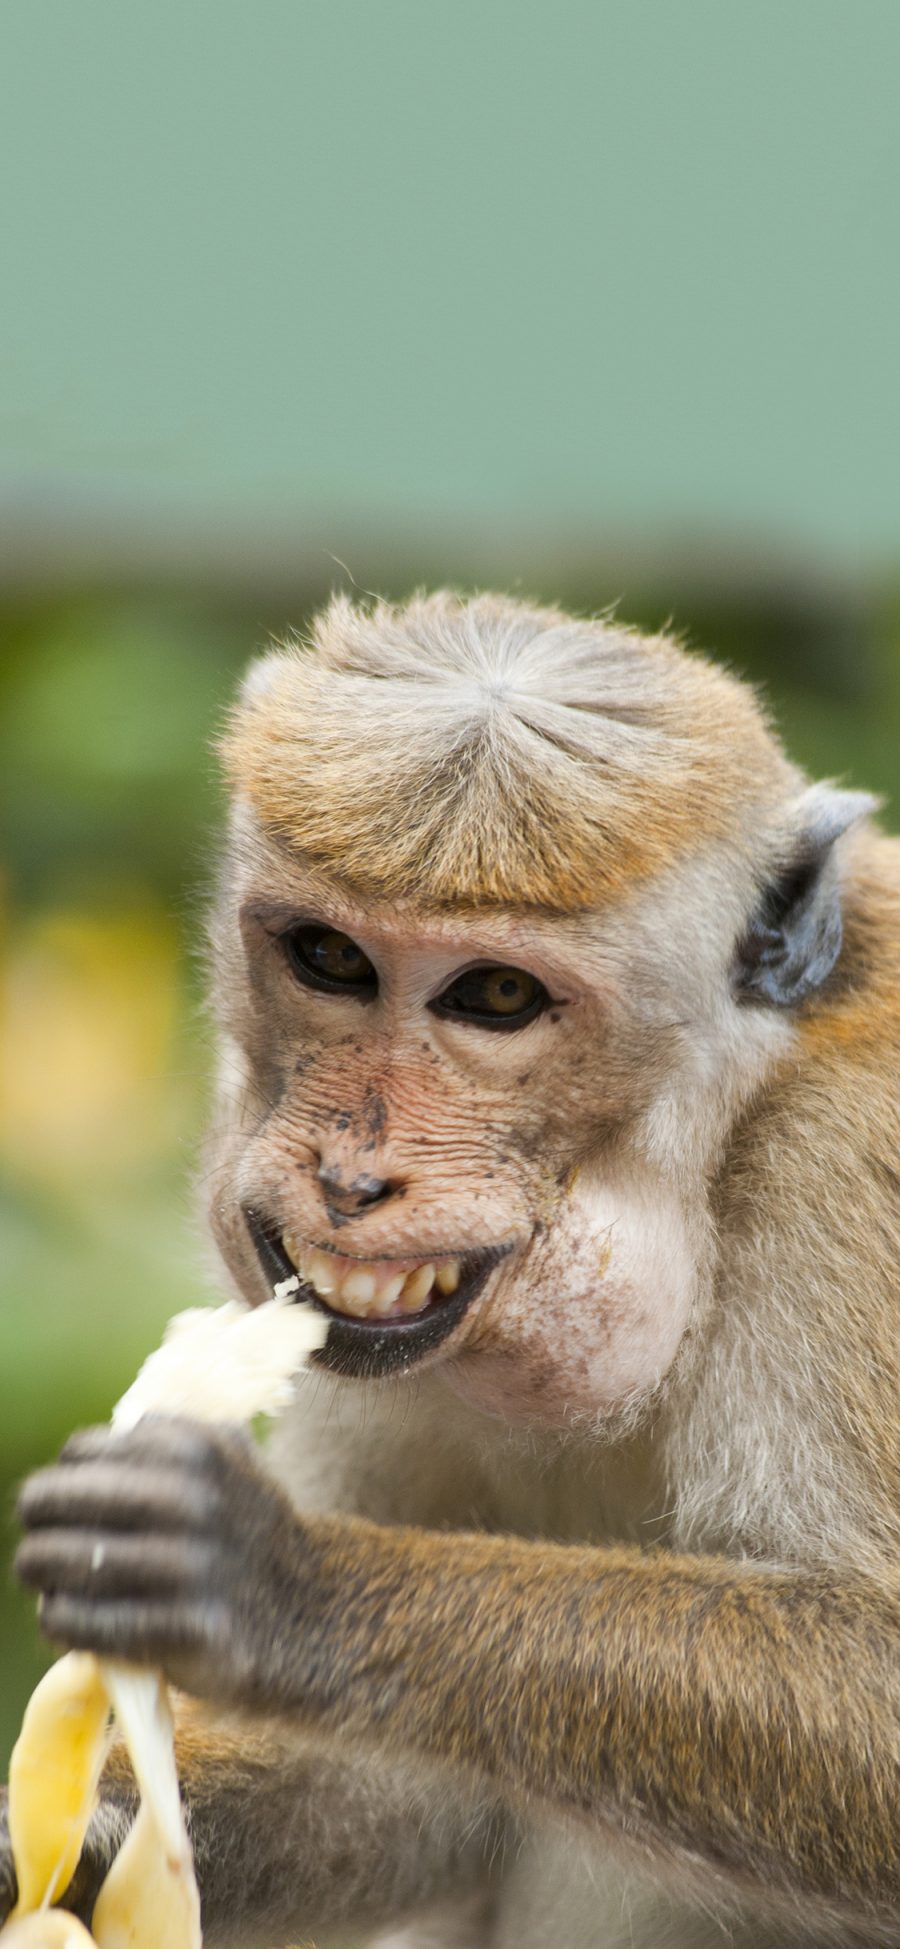 [2436×1125]保护动物 猴子 进食 香蕉 苹果手机壁纸图片